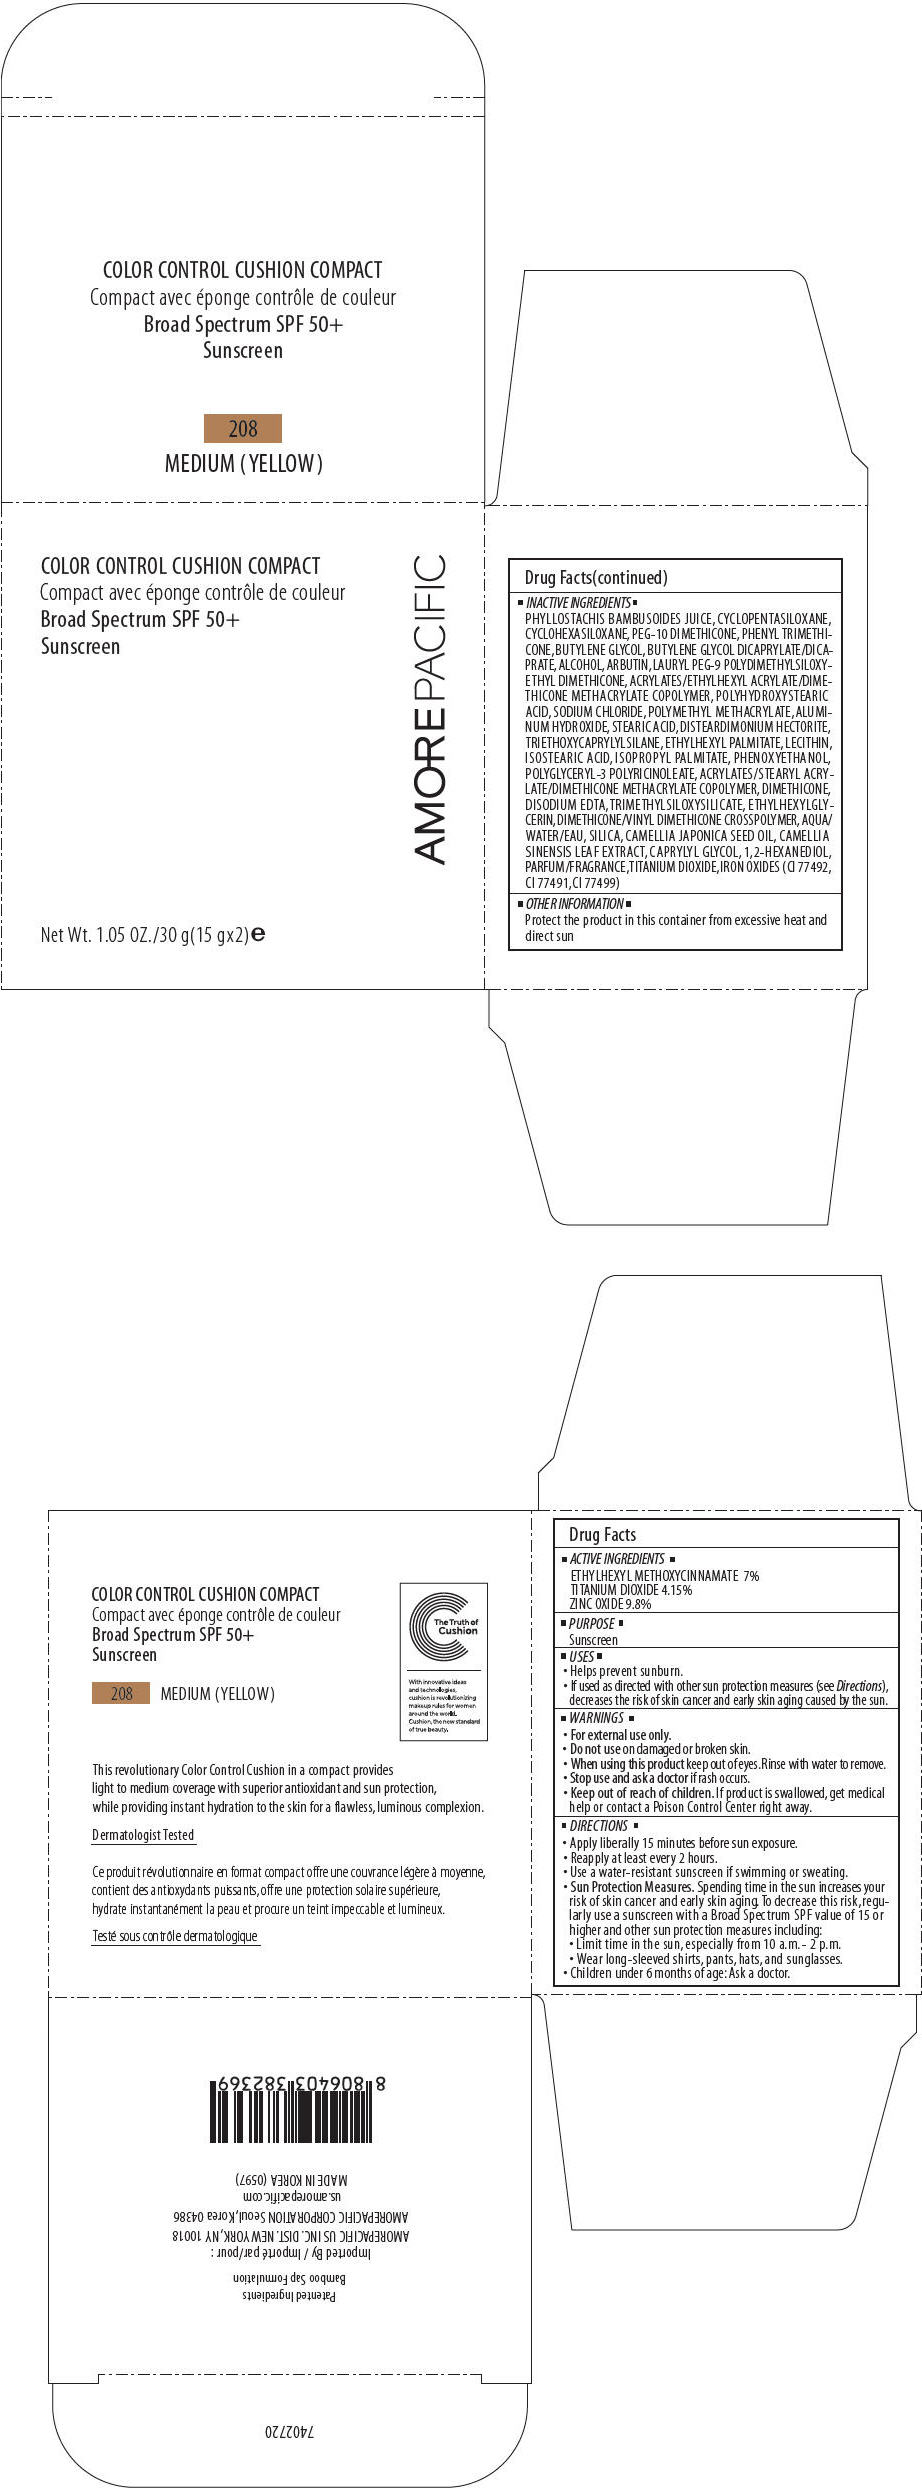 PRINCIPAL DISPLAY PANEL - 30 g Container Carton - 208 MEDIUM (YELLOW)